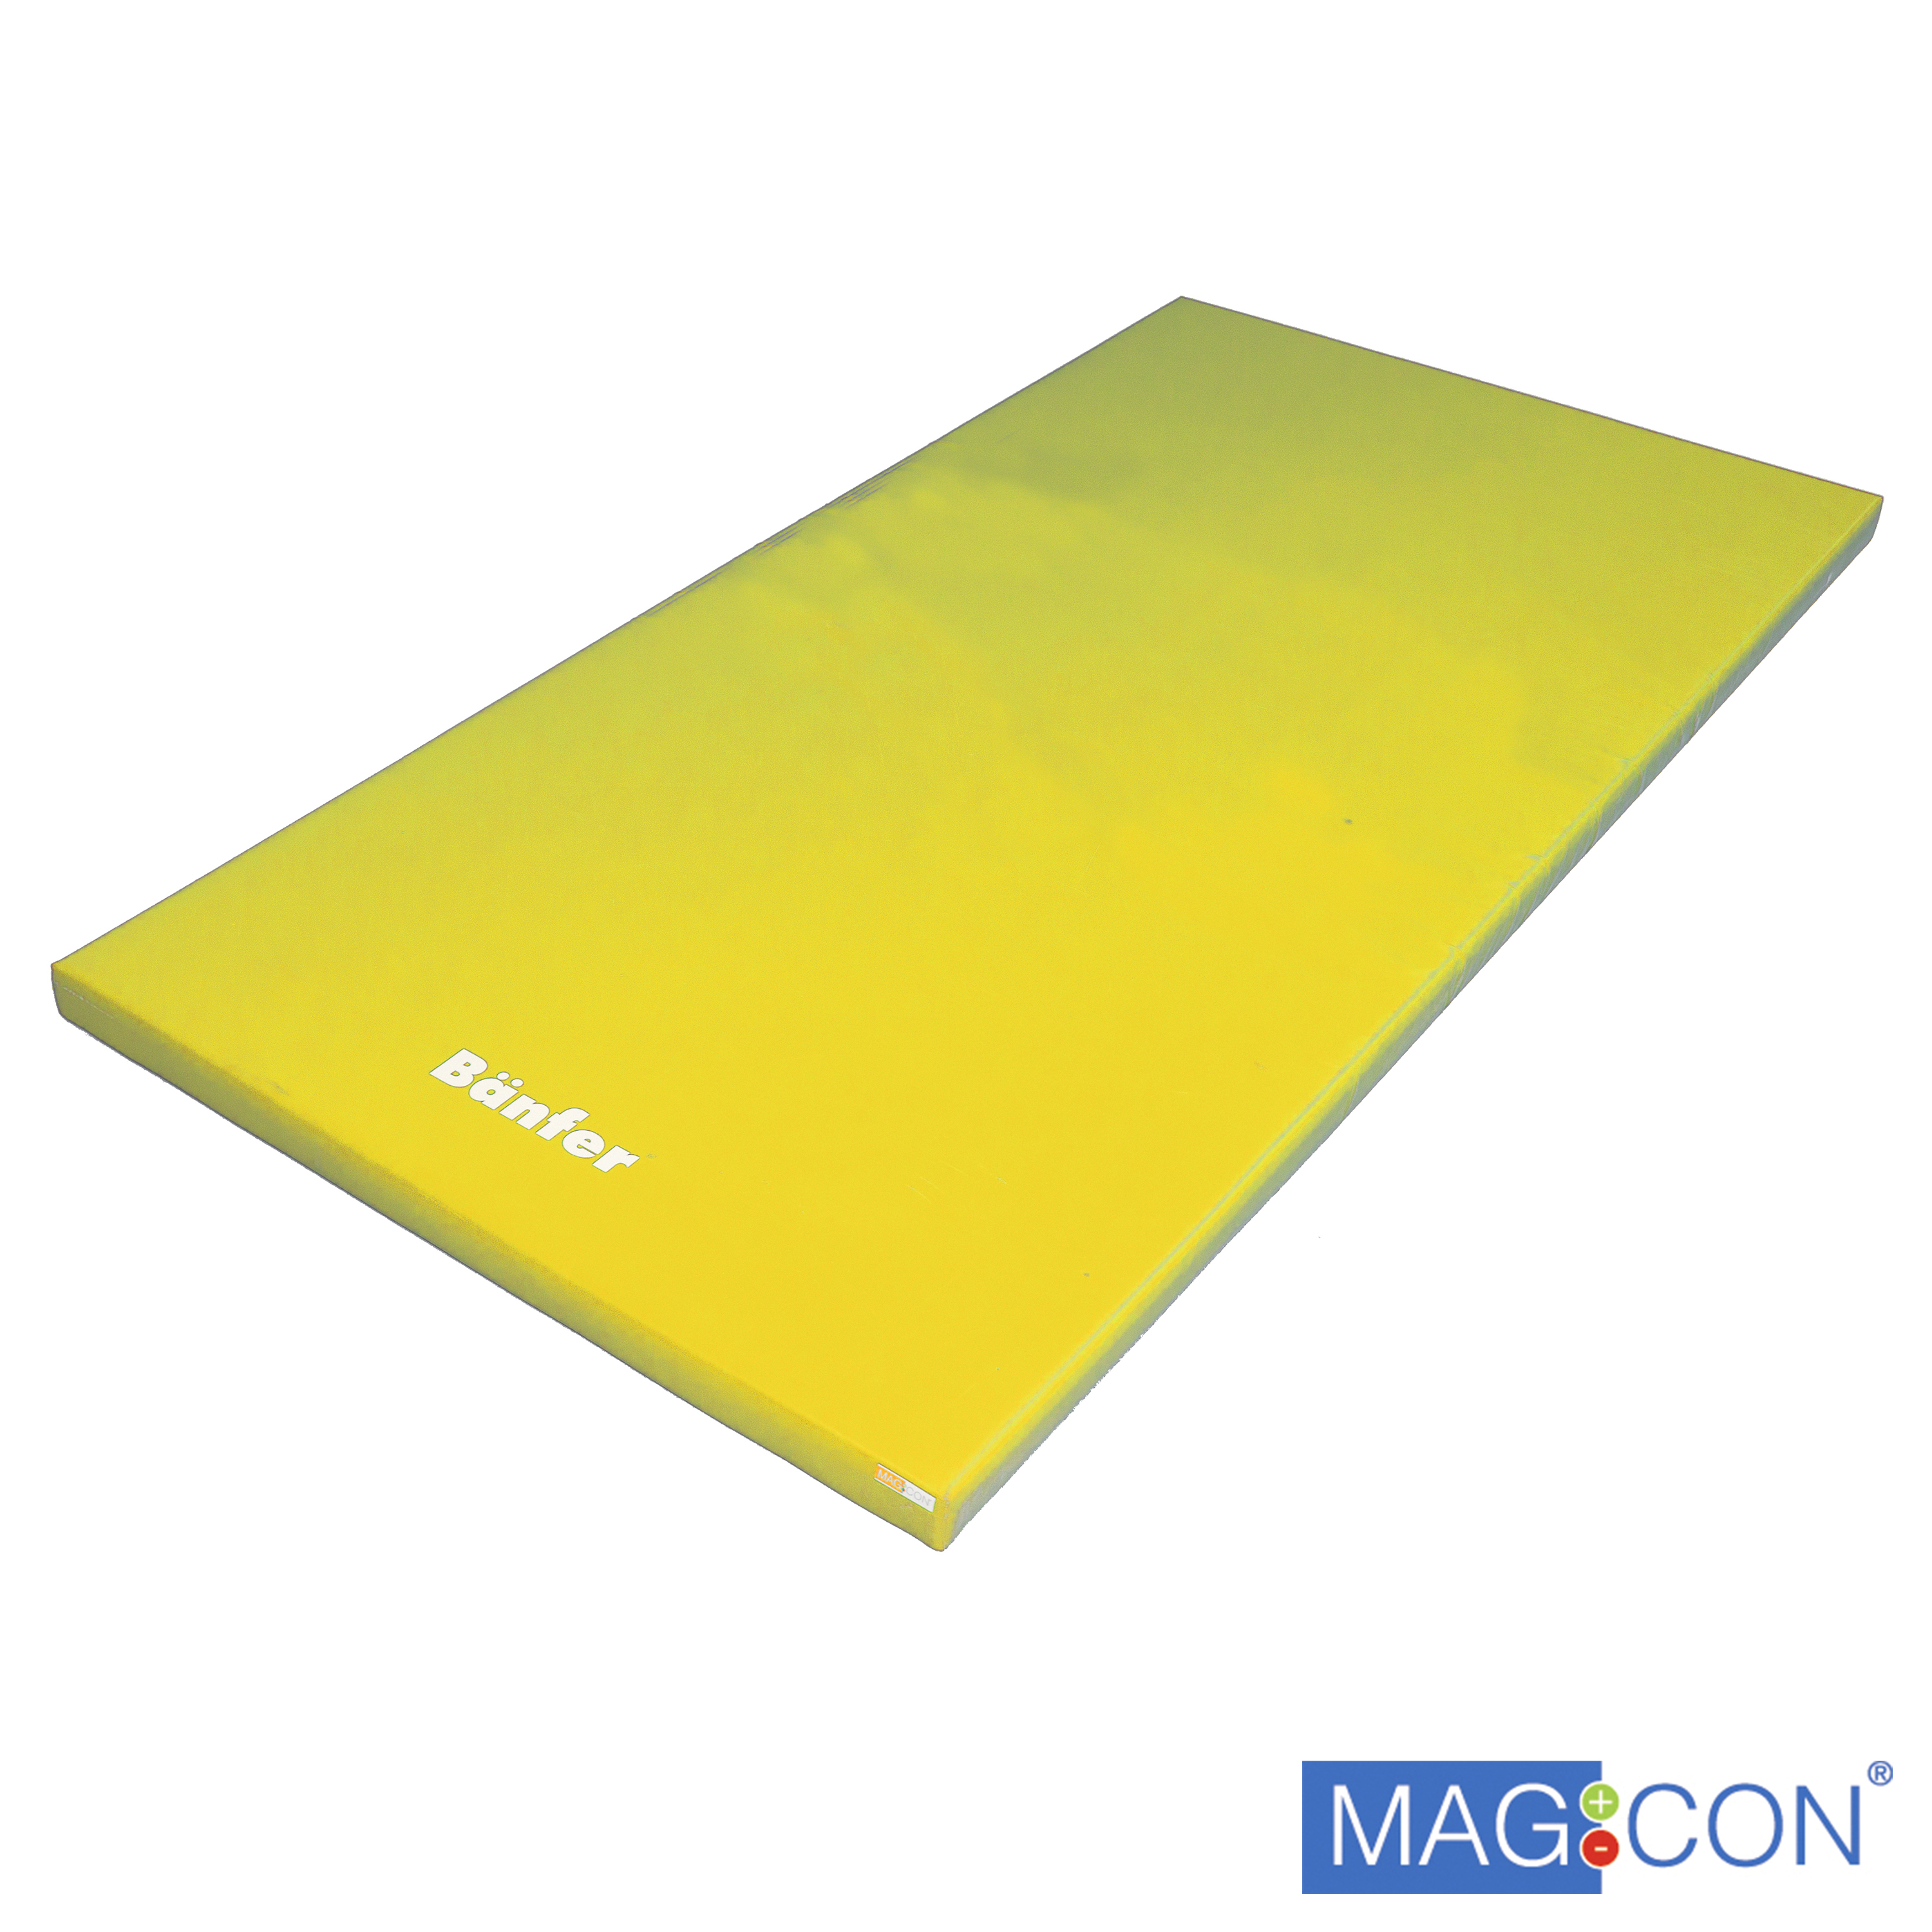 Super-Leichtturnmatte Magnetecken 150 x 100 x 6 cm, gelb